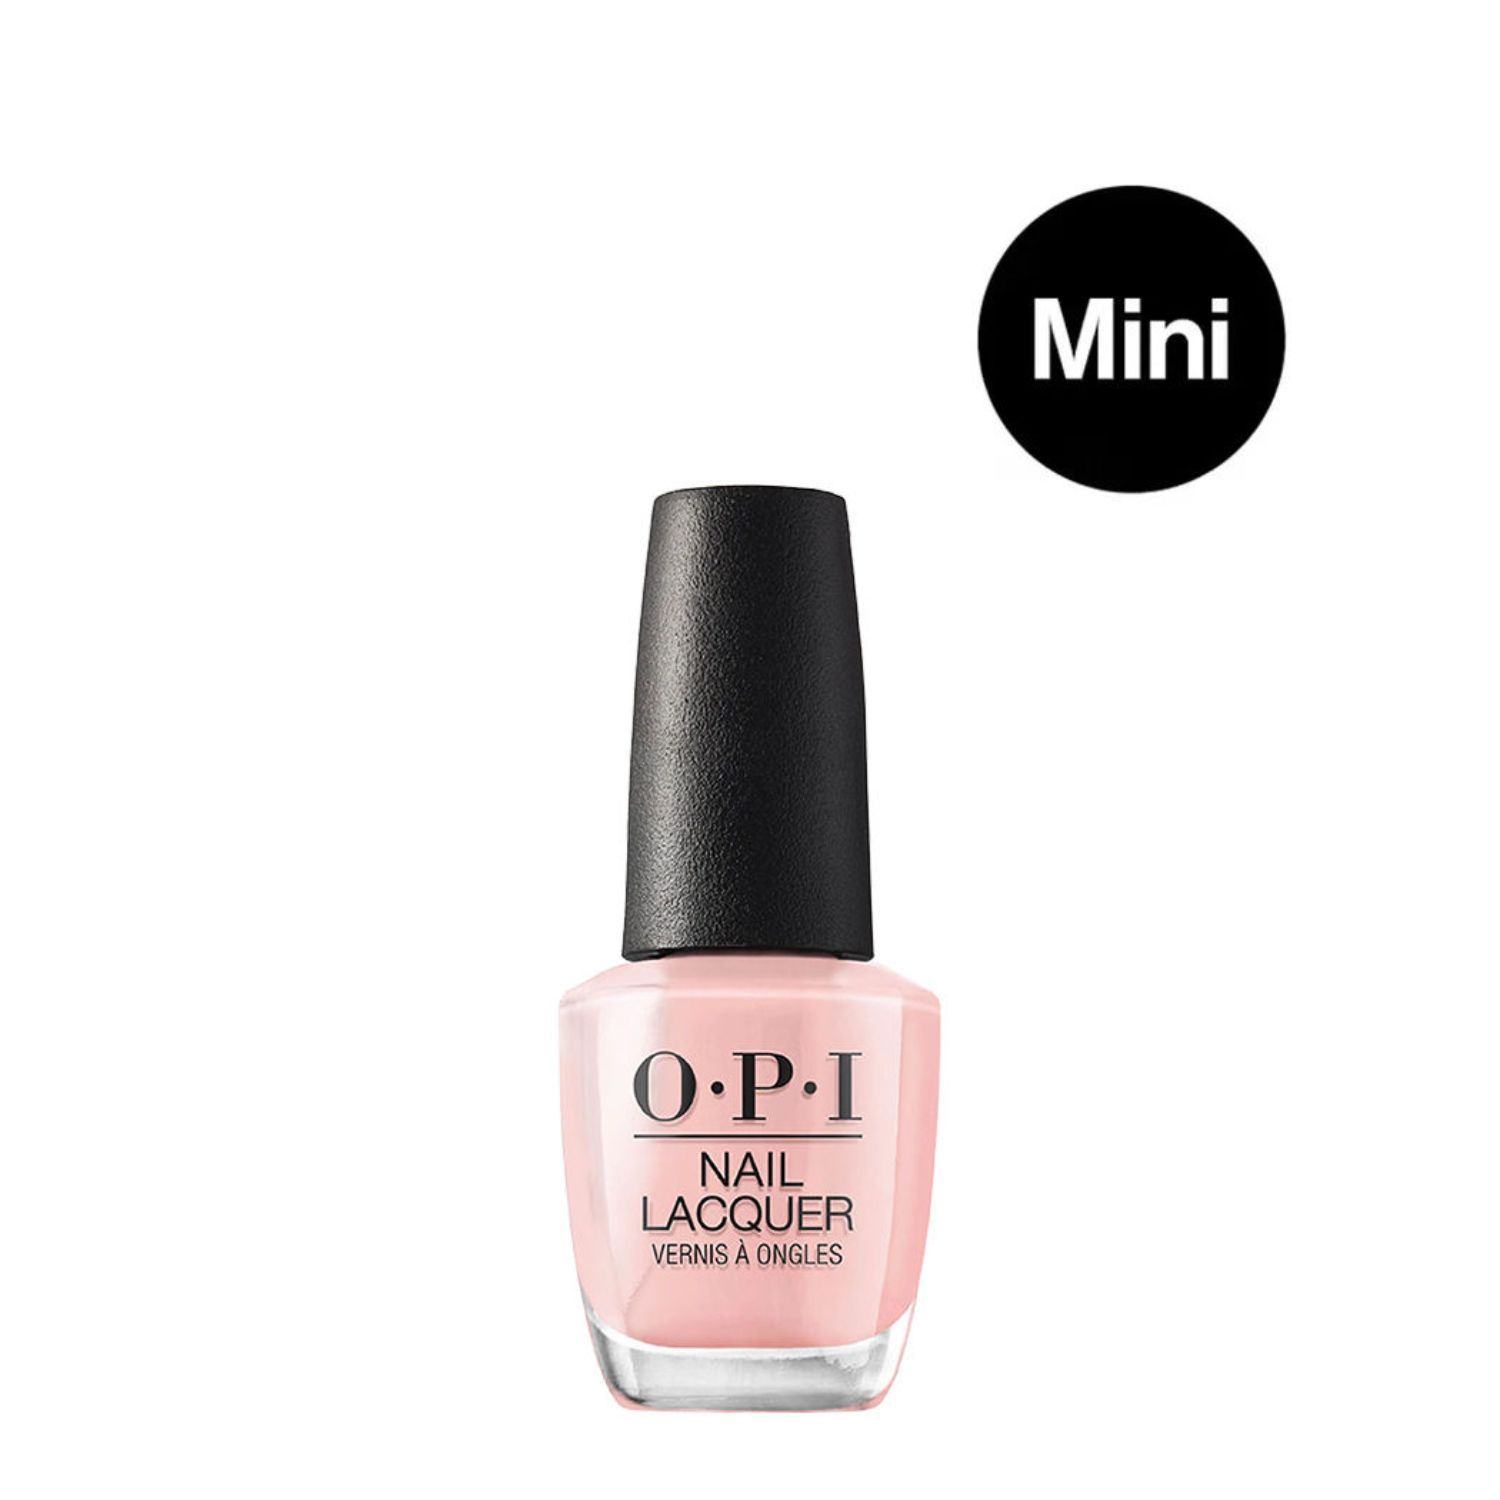 OPI®: OPI Nails the Runway - Nail Lacquer | Shimmery Gray Nail Polish